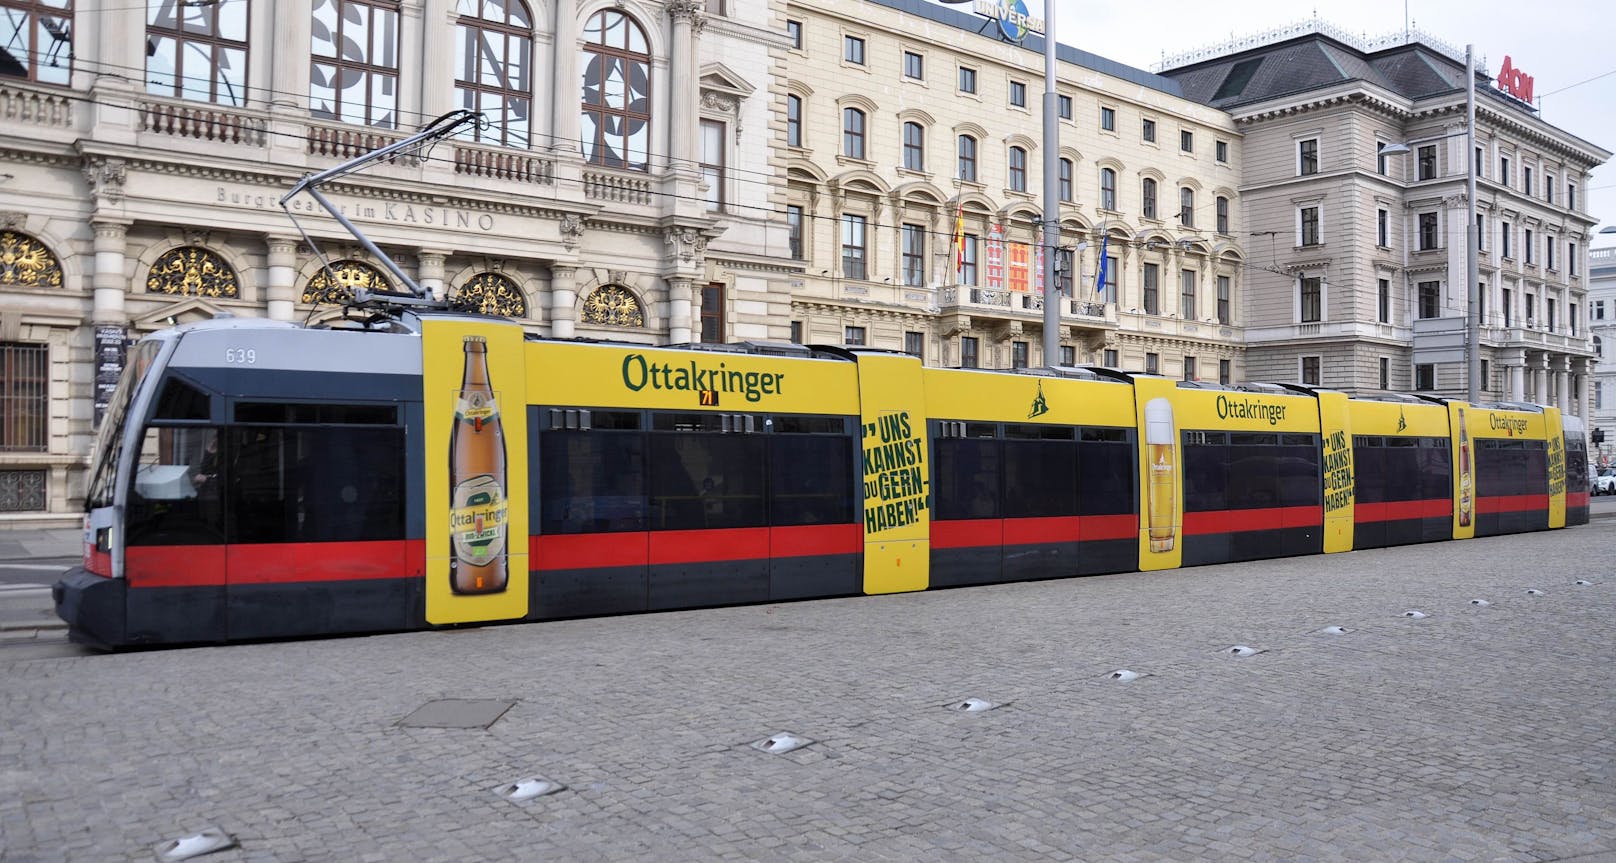 Auch mit einer Straßenbahn im gelben Design will die Brauerei alle Blicke auf sich ziehen.